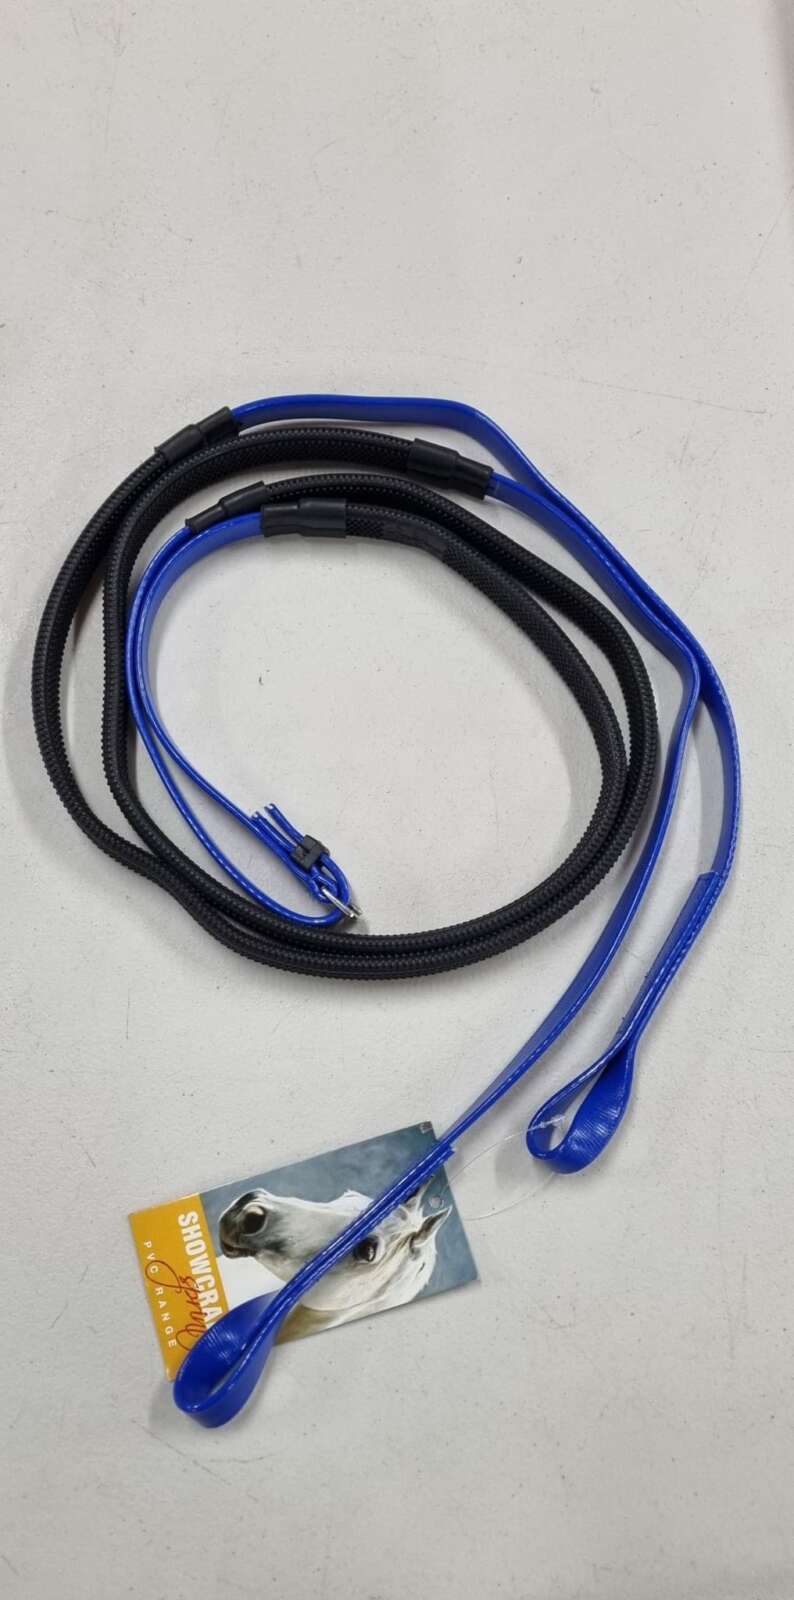 PVC Rubber Grip Loop Reins – Blue